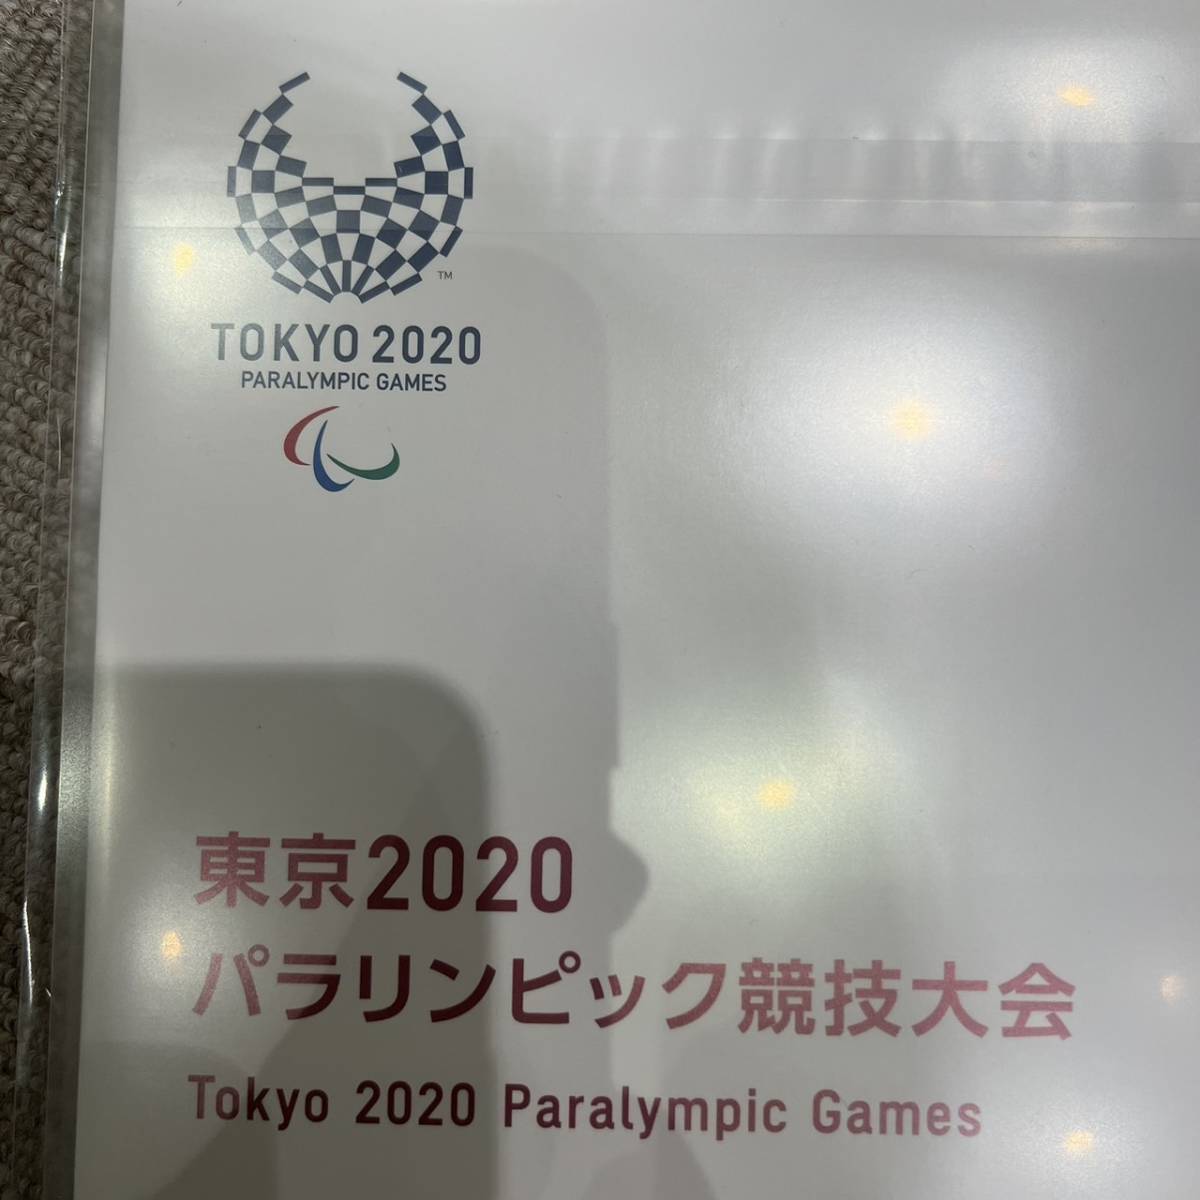 【ND-432a】2020 東京オリンピック パラリンピック 競技大会記念切手帳 定価10,000円 切手シート3種類 コレクション コレクター向け_画像9